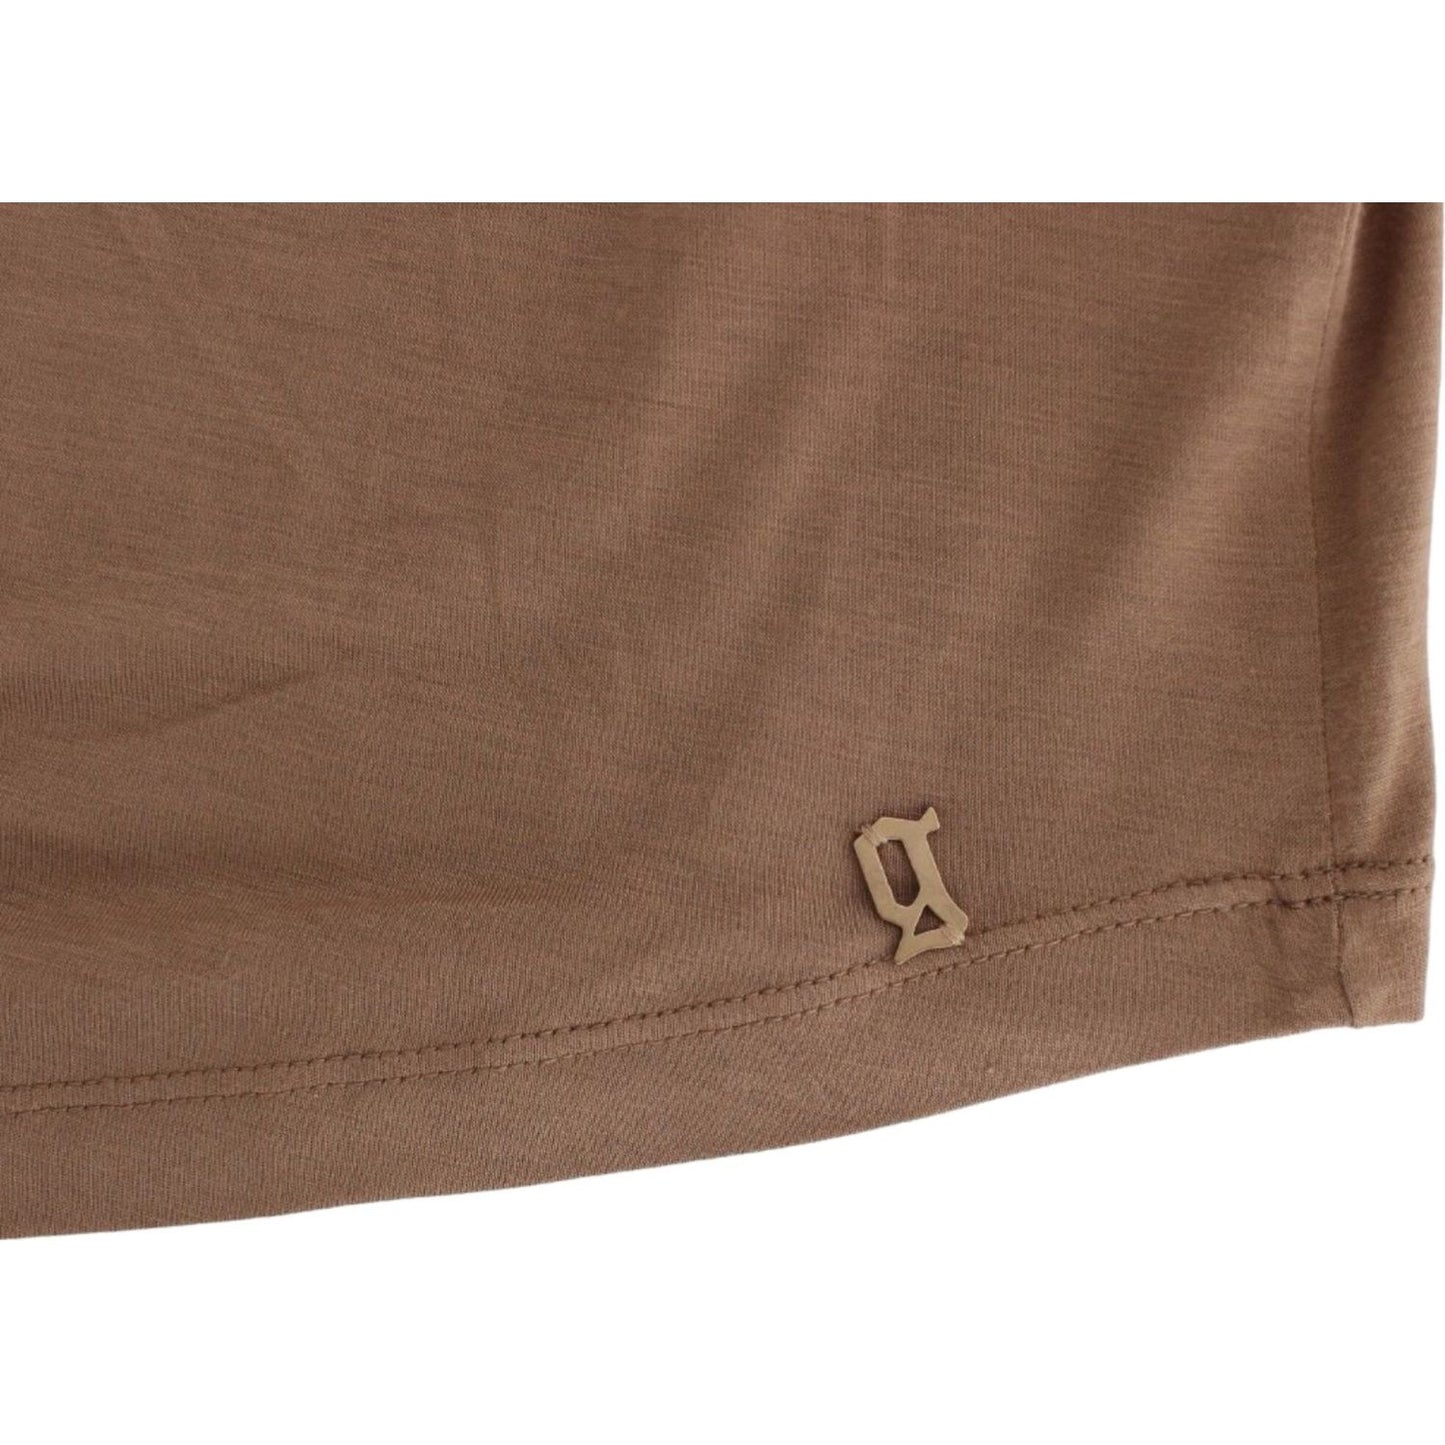 John Galliano Elegant Short-Sleeved Brown Rayon Top brown-shortsleeved-top 5554-brown-shortsleeved-top-6-scaled-19d43c50-5cb.jpg